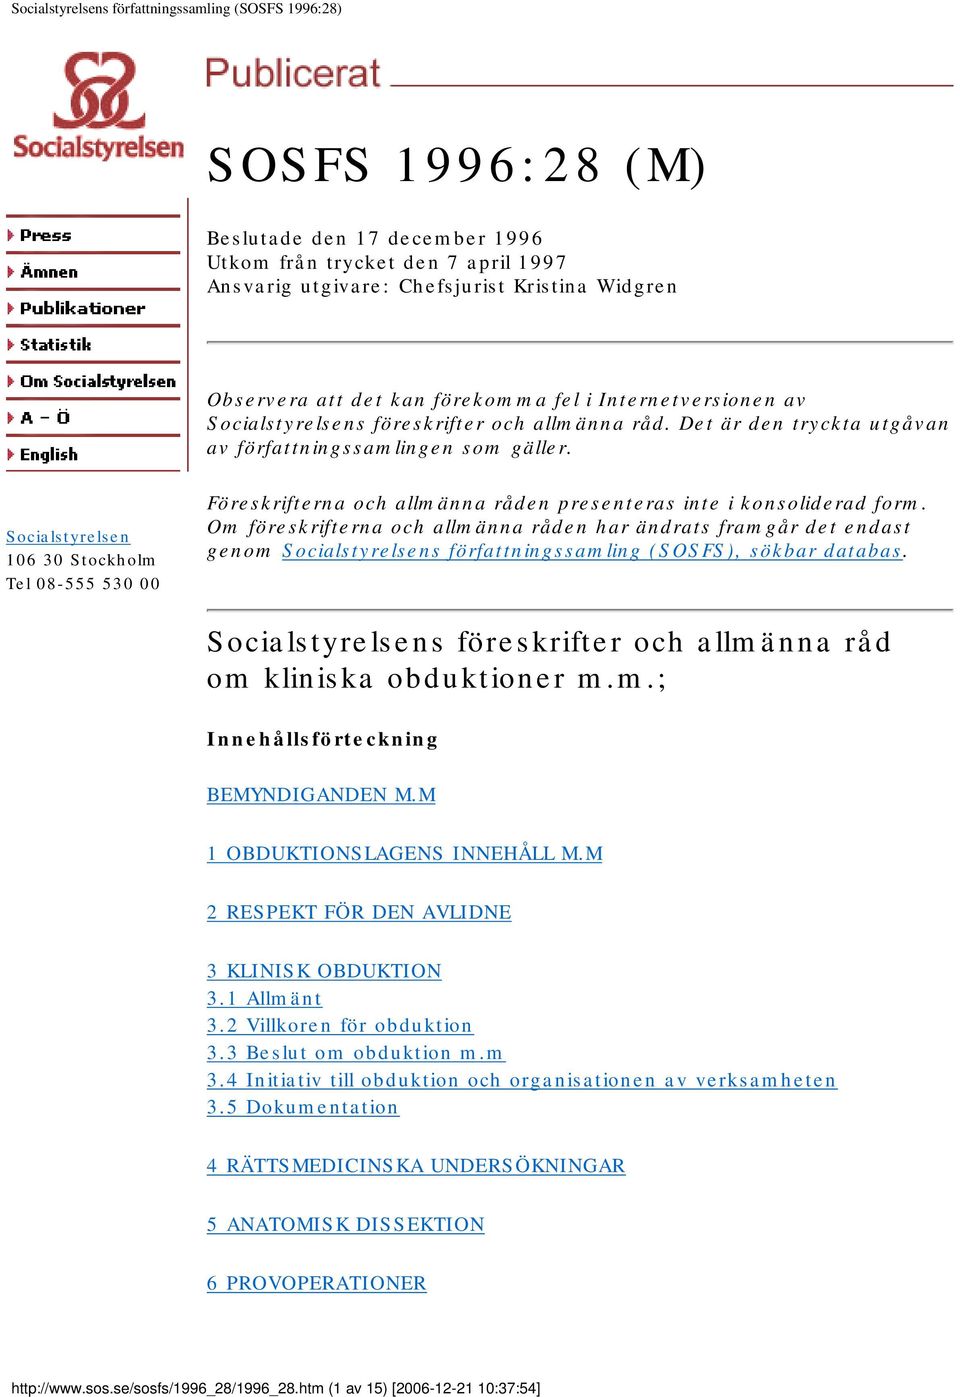 Socialstyrelsen 106 30 Stockholm Tel 08-555 530 00 Föreskrifterna och allmänna råden presenteras inte i konsoliderad form.